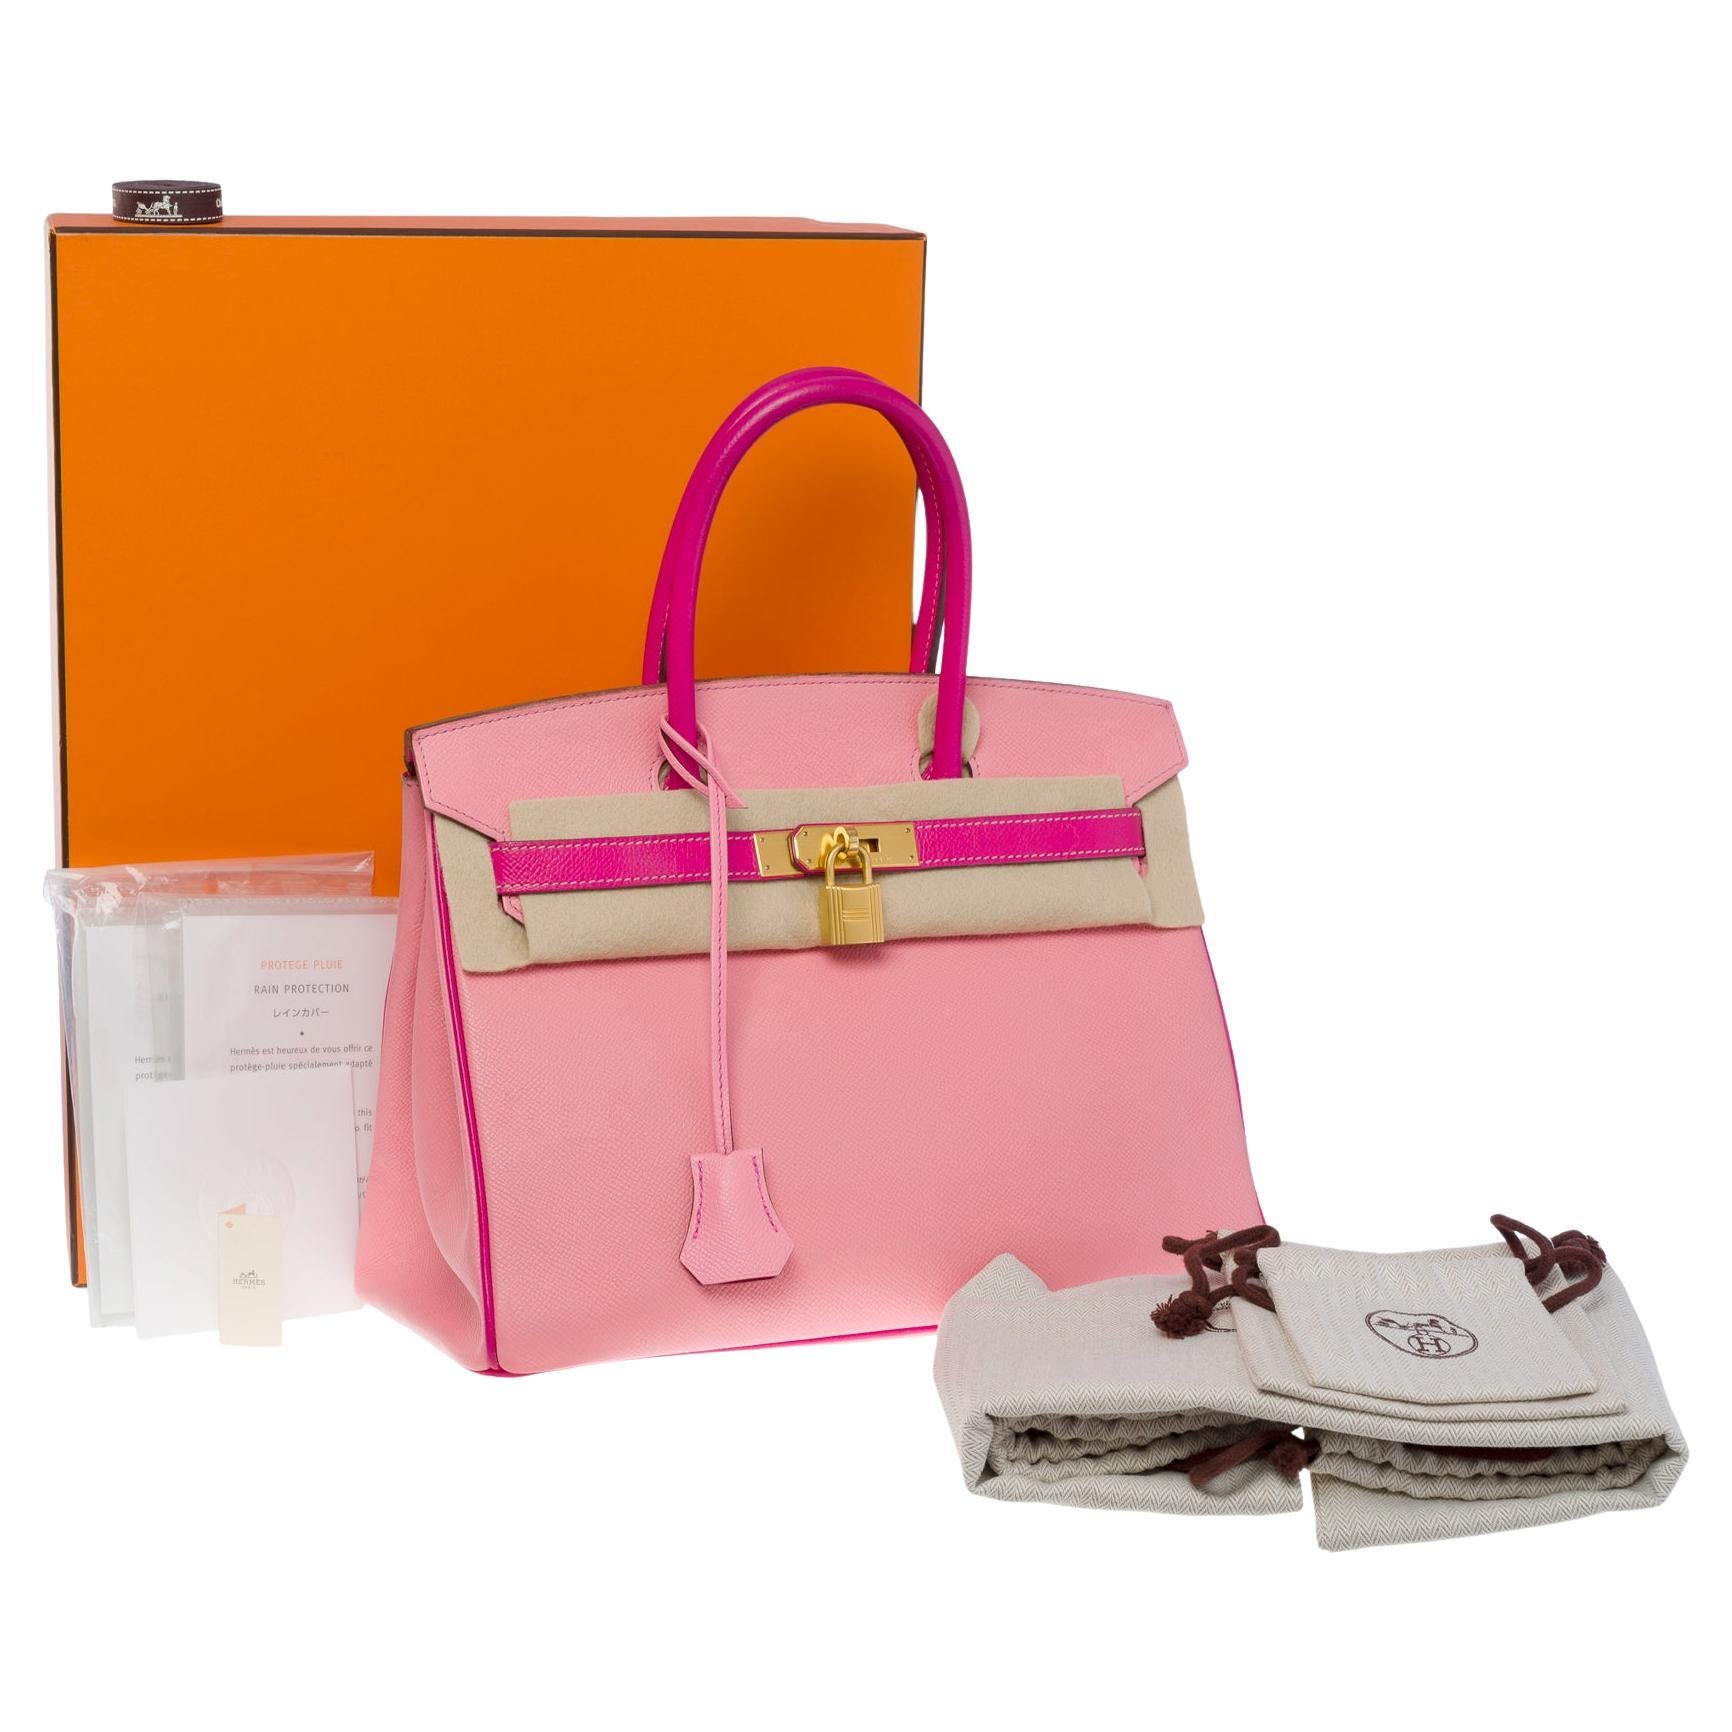  Rare Hermès Birkin 30 HSS Special Order handbag in Pink Epsom leather, BGHW For Sale